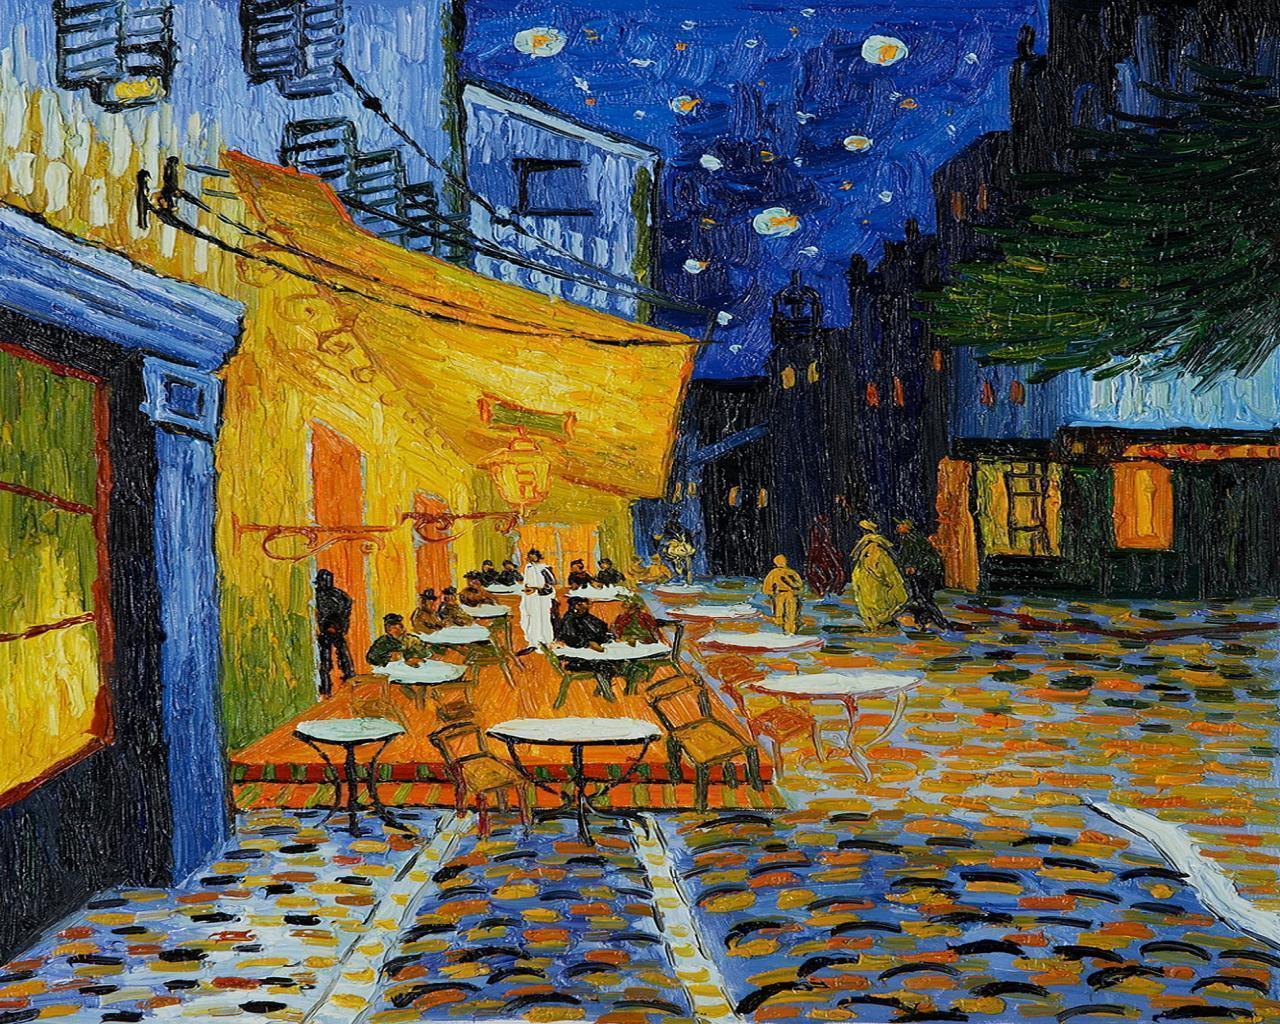 Nhìn bức tranh quán cà phê ban đêm của Van Gogh, bạn sẽ cảm nhận được không khí hiền hòa và yên bình đến ngỡ ngàng. Hãy để cho thứ tuyệt vời này đưa bạn đến một thế giới khác, thật sự đáng để chiêm ngưỡng.